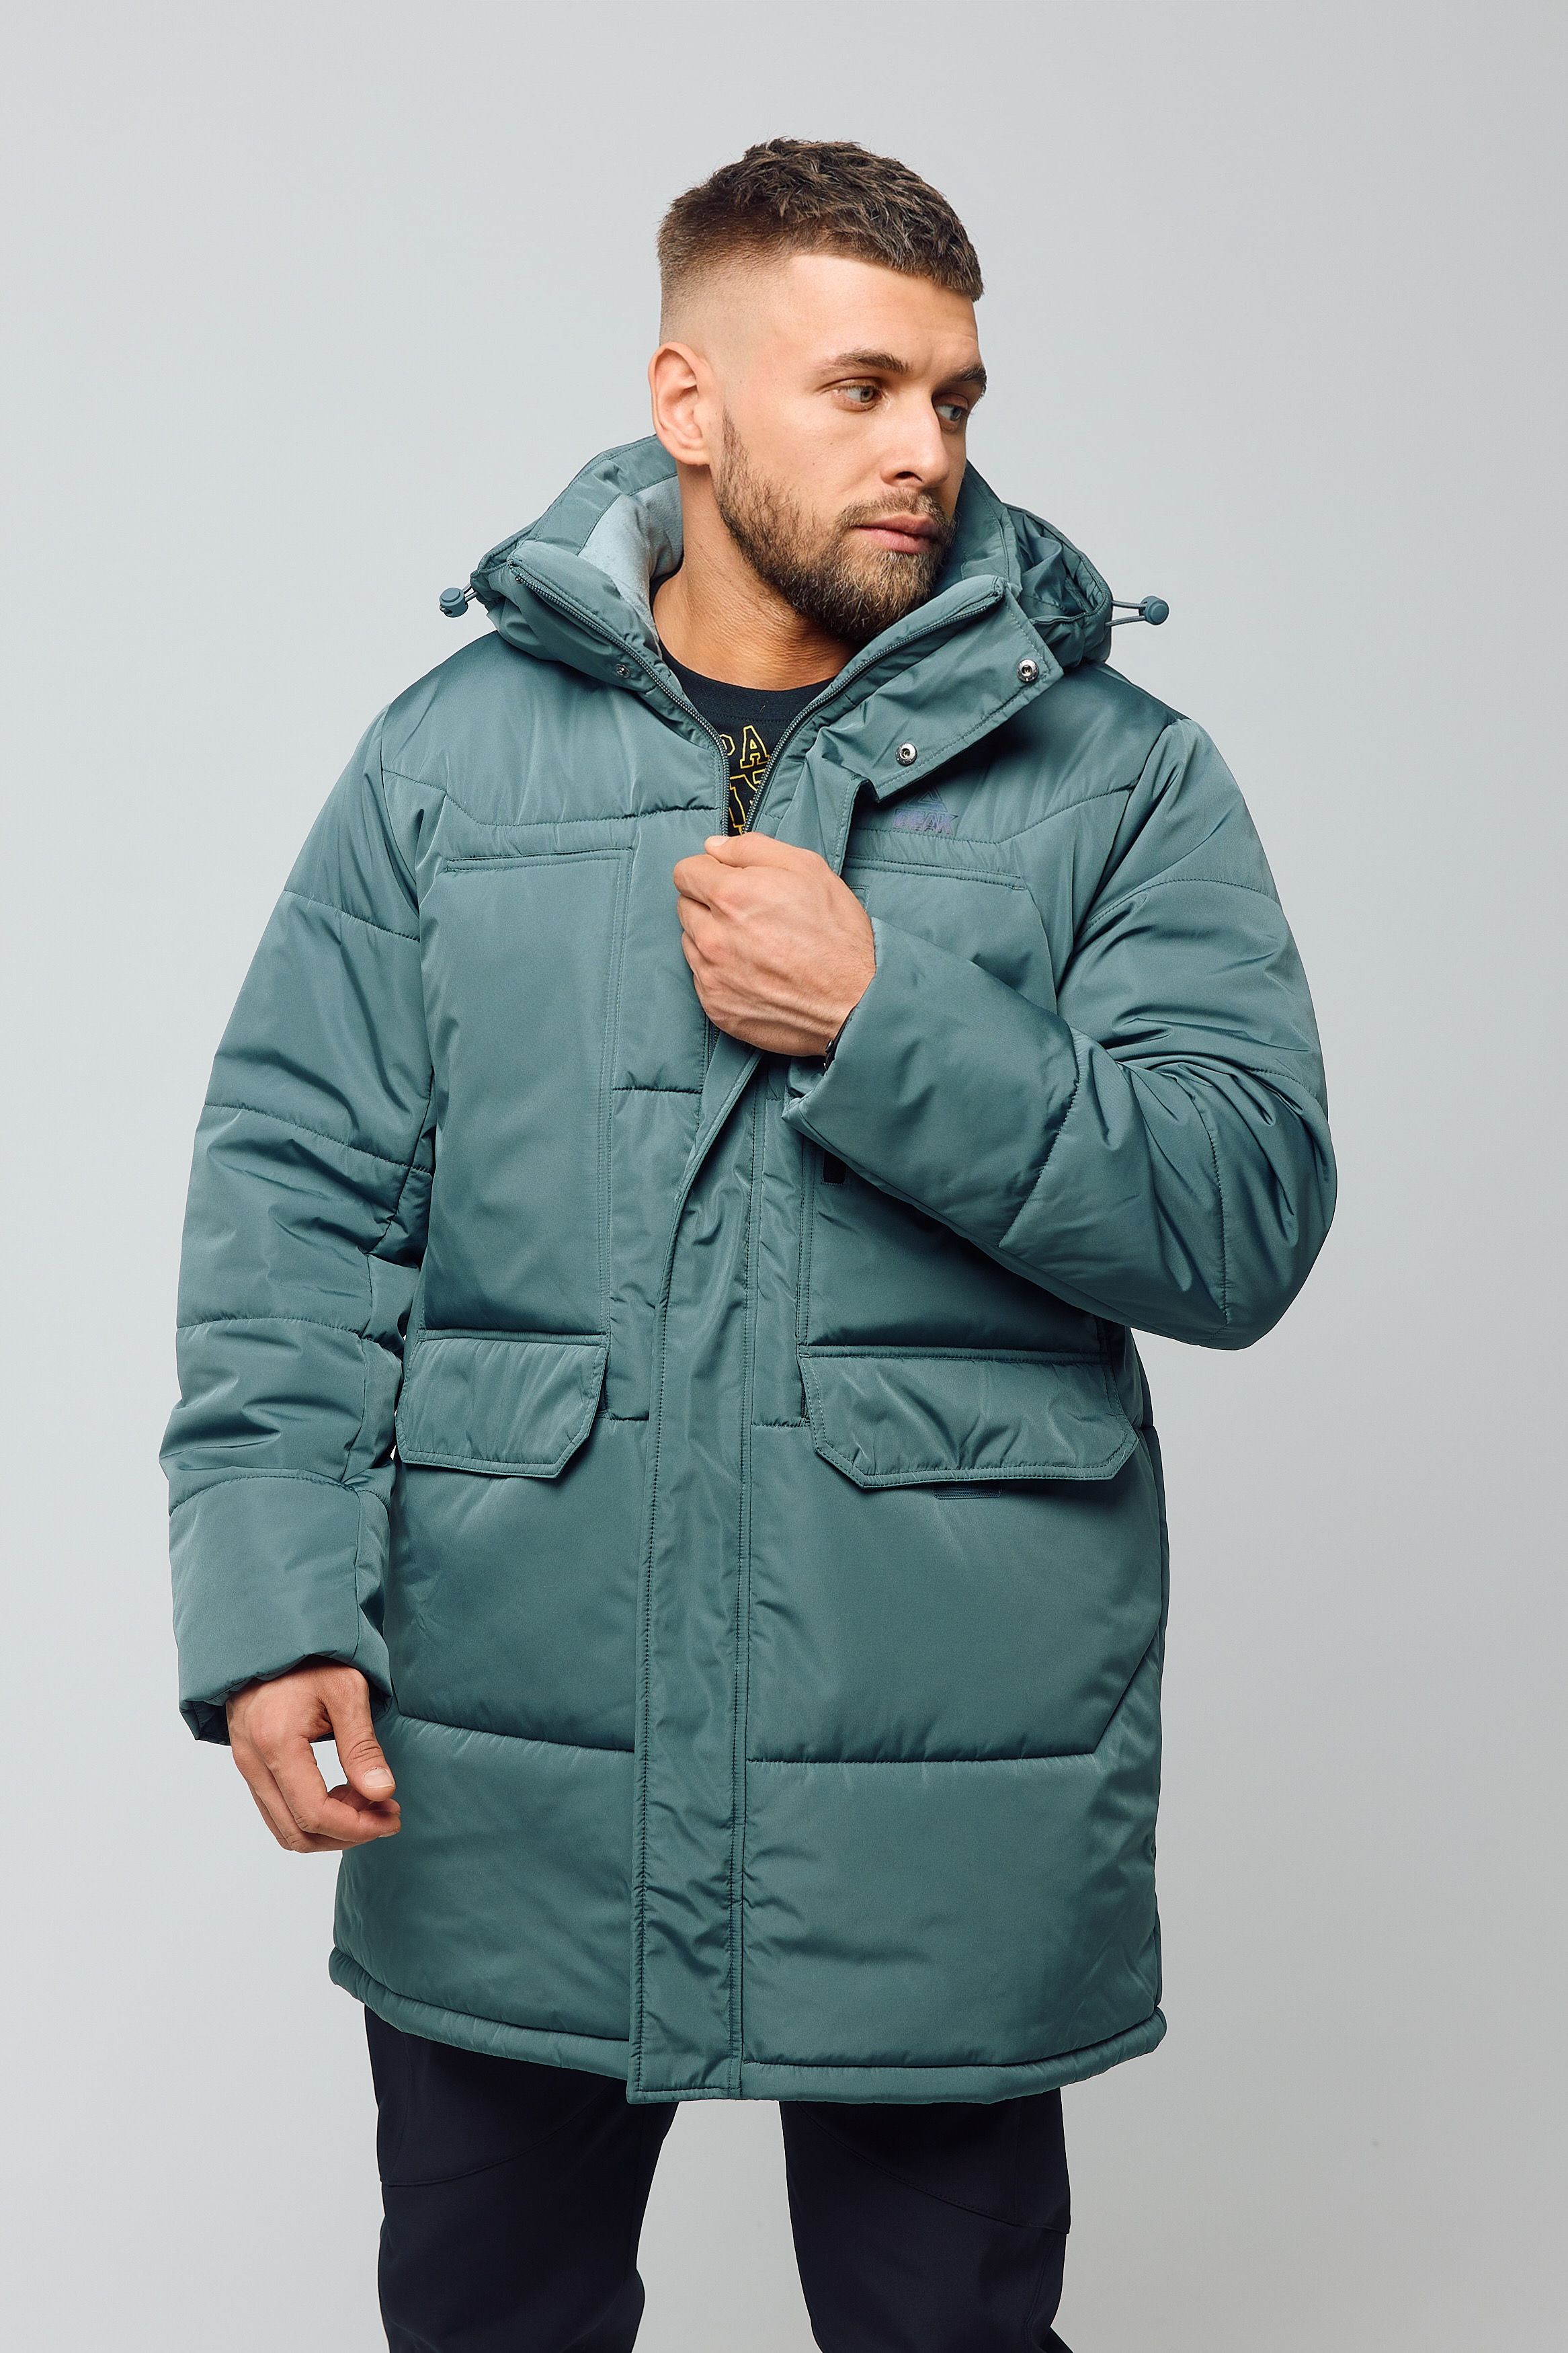 Зимняя куртка мужская PEAK FW5224081 зеленая XL